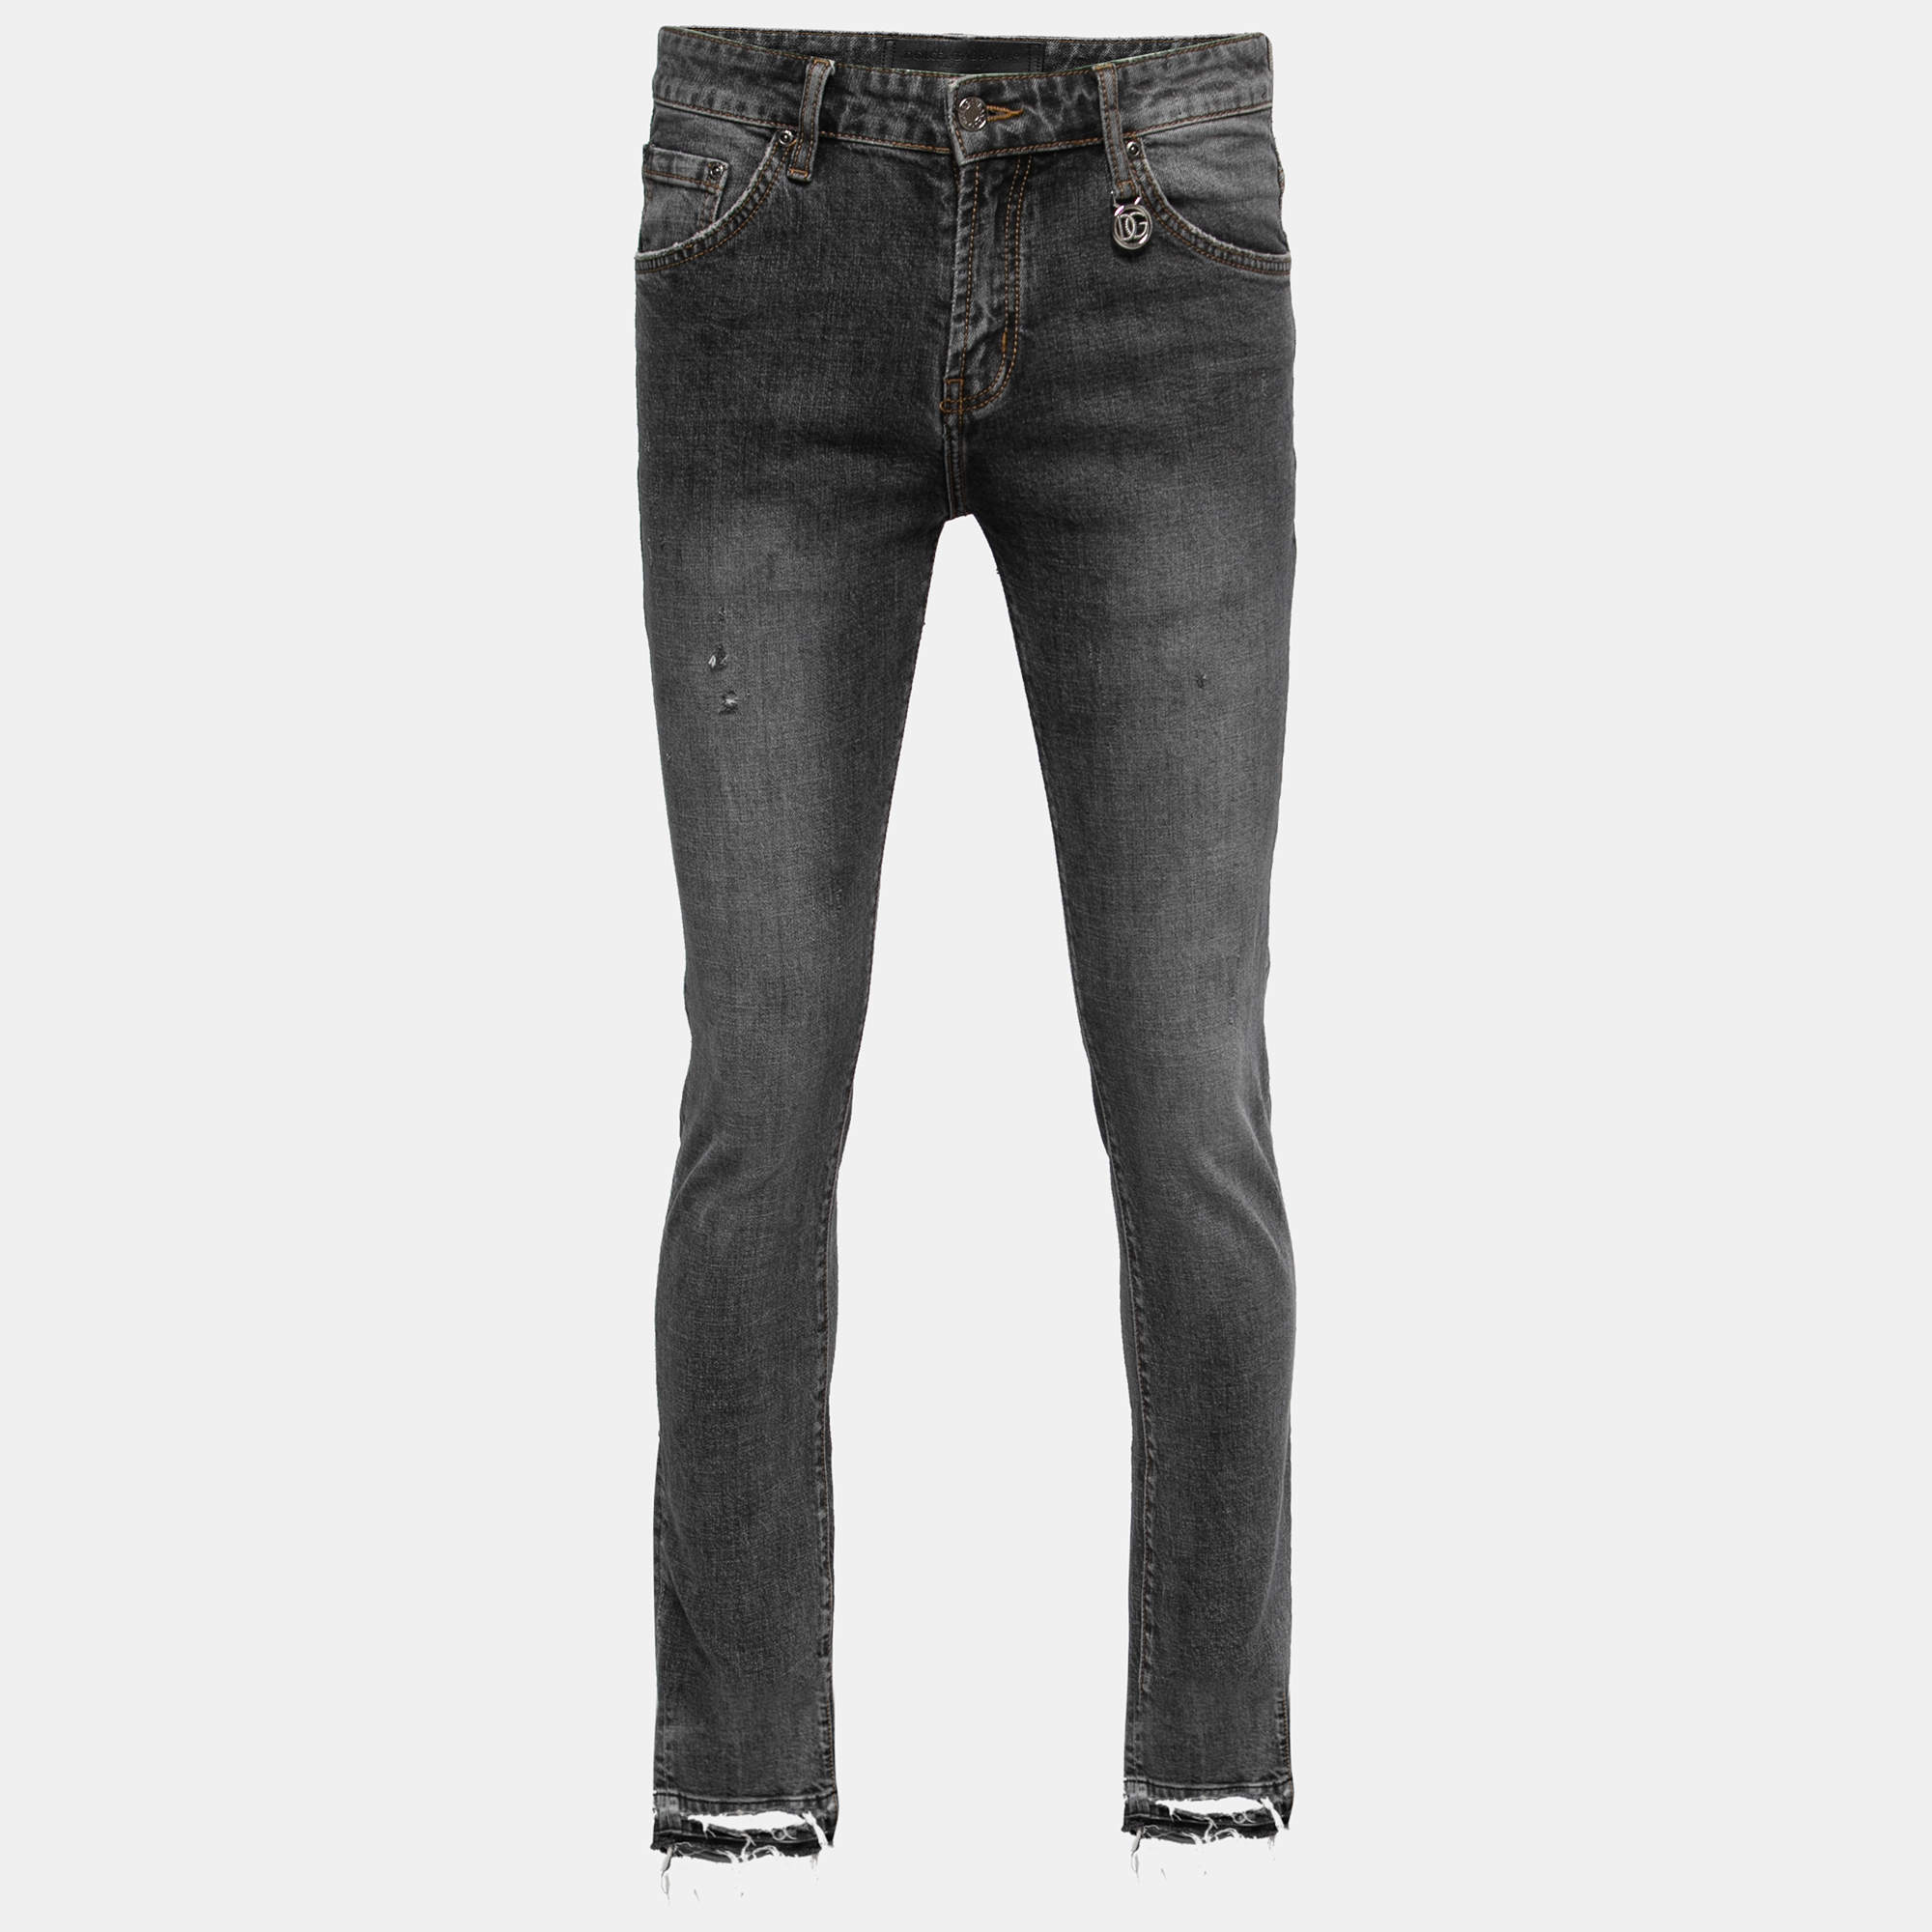 Dolce & Gabbana Grey Distressed Denim Stretch 14 Jeans M Waist 32"